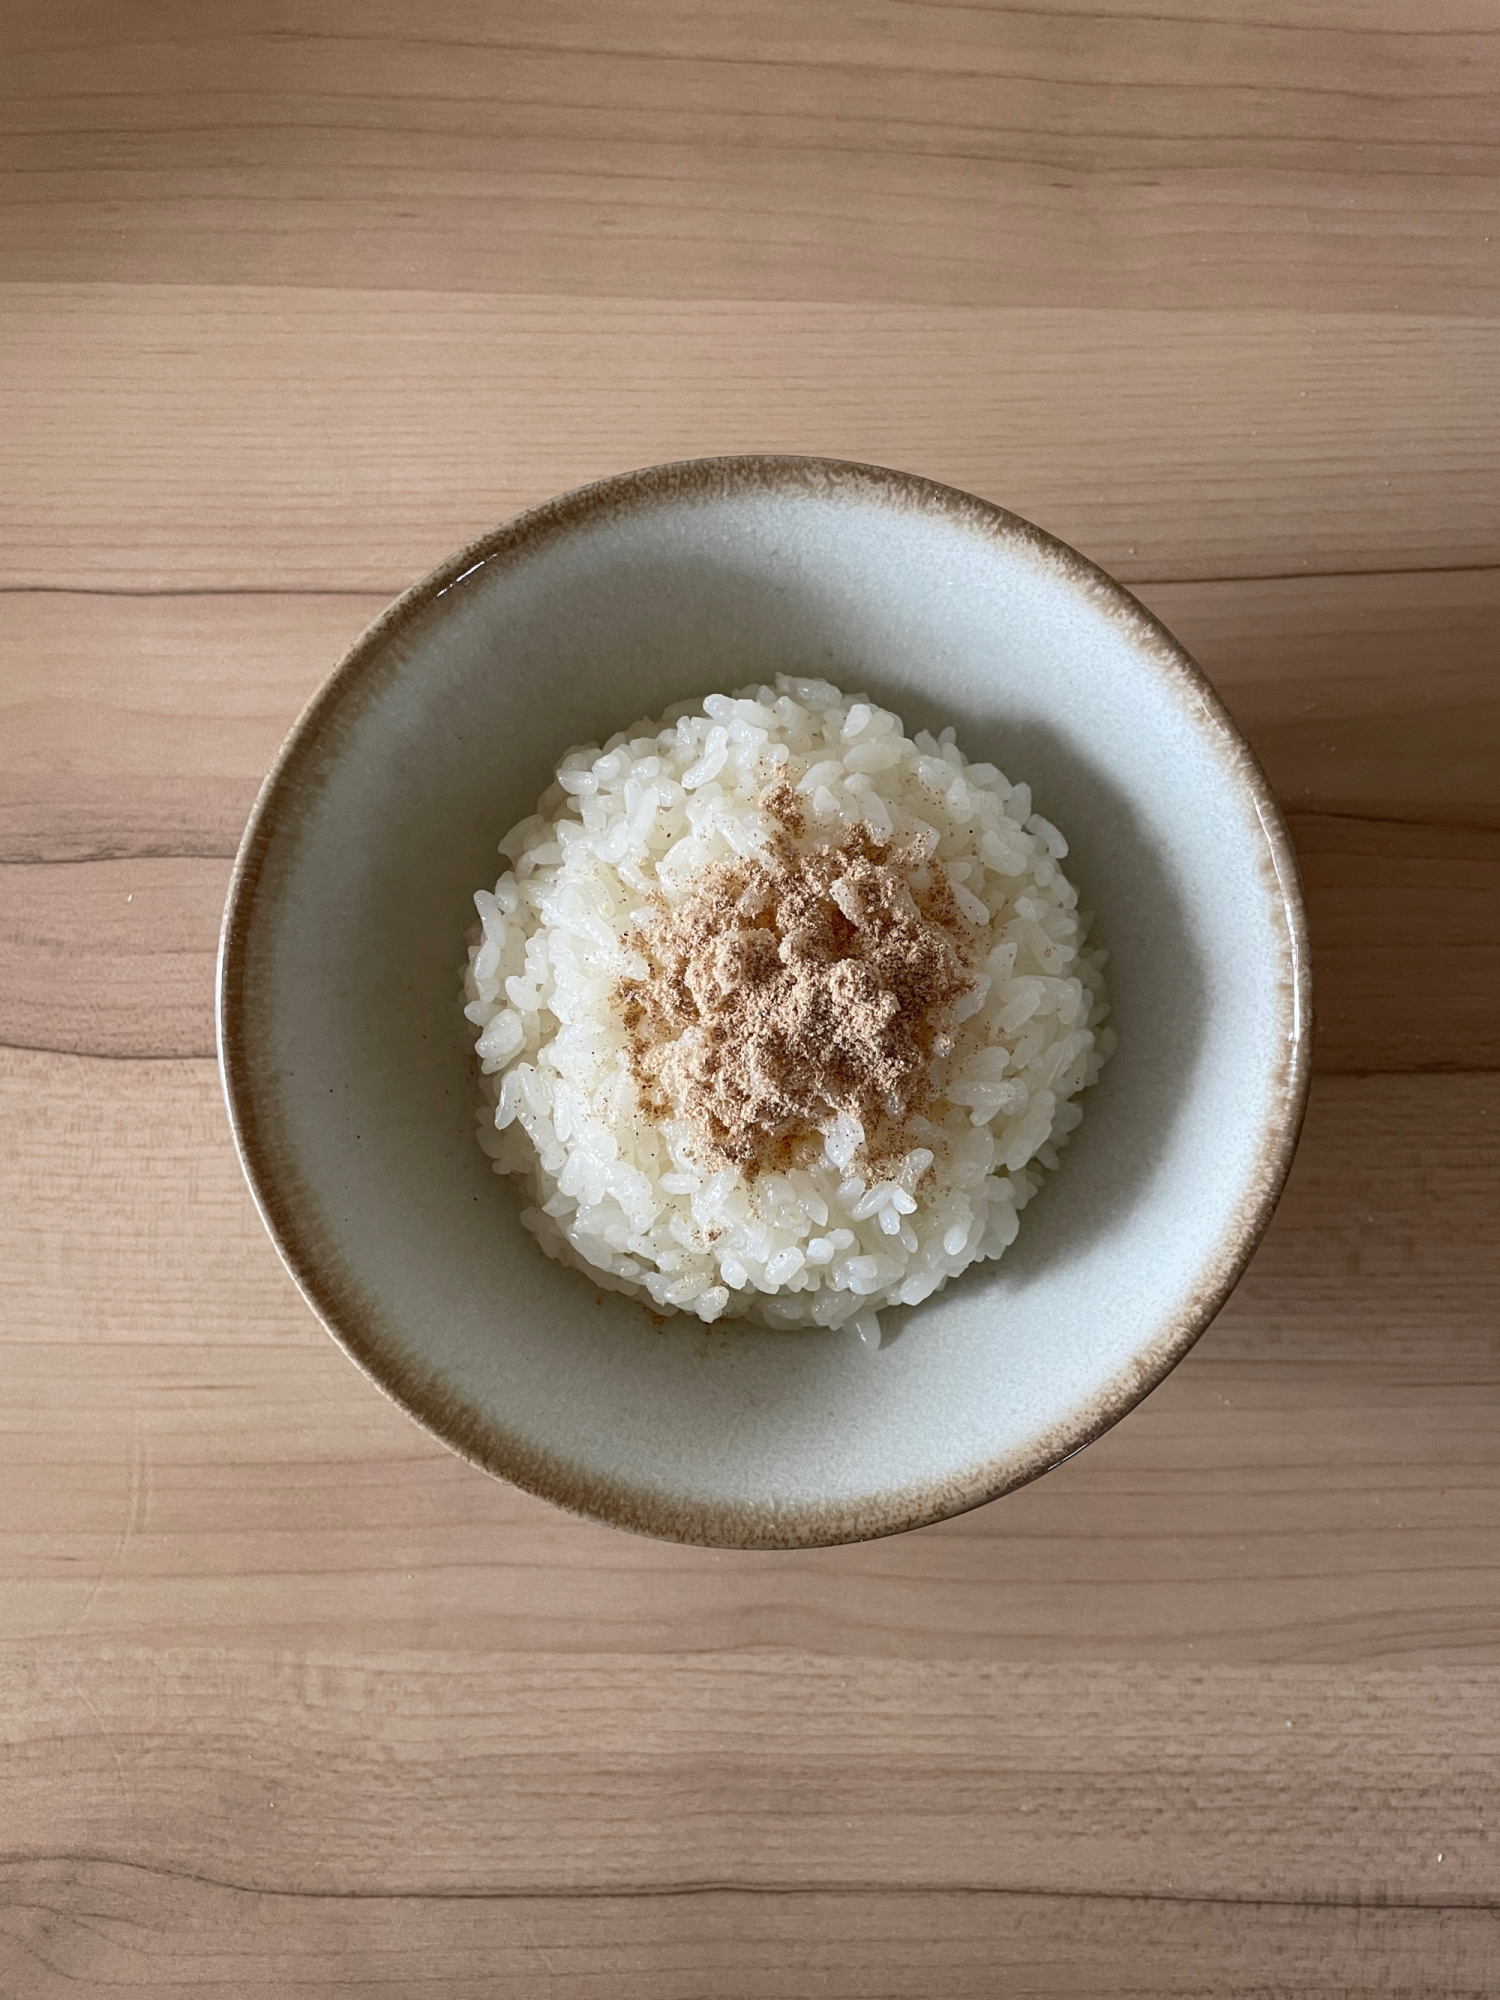 ローリエと米酢みりんのはったい塩ごはん